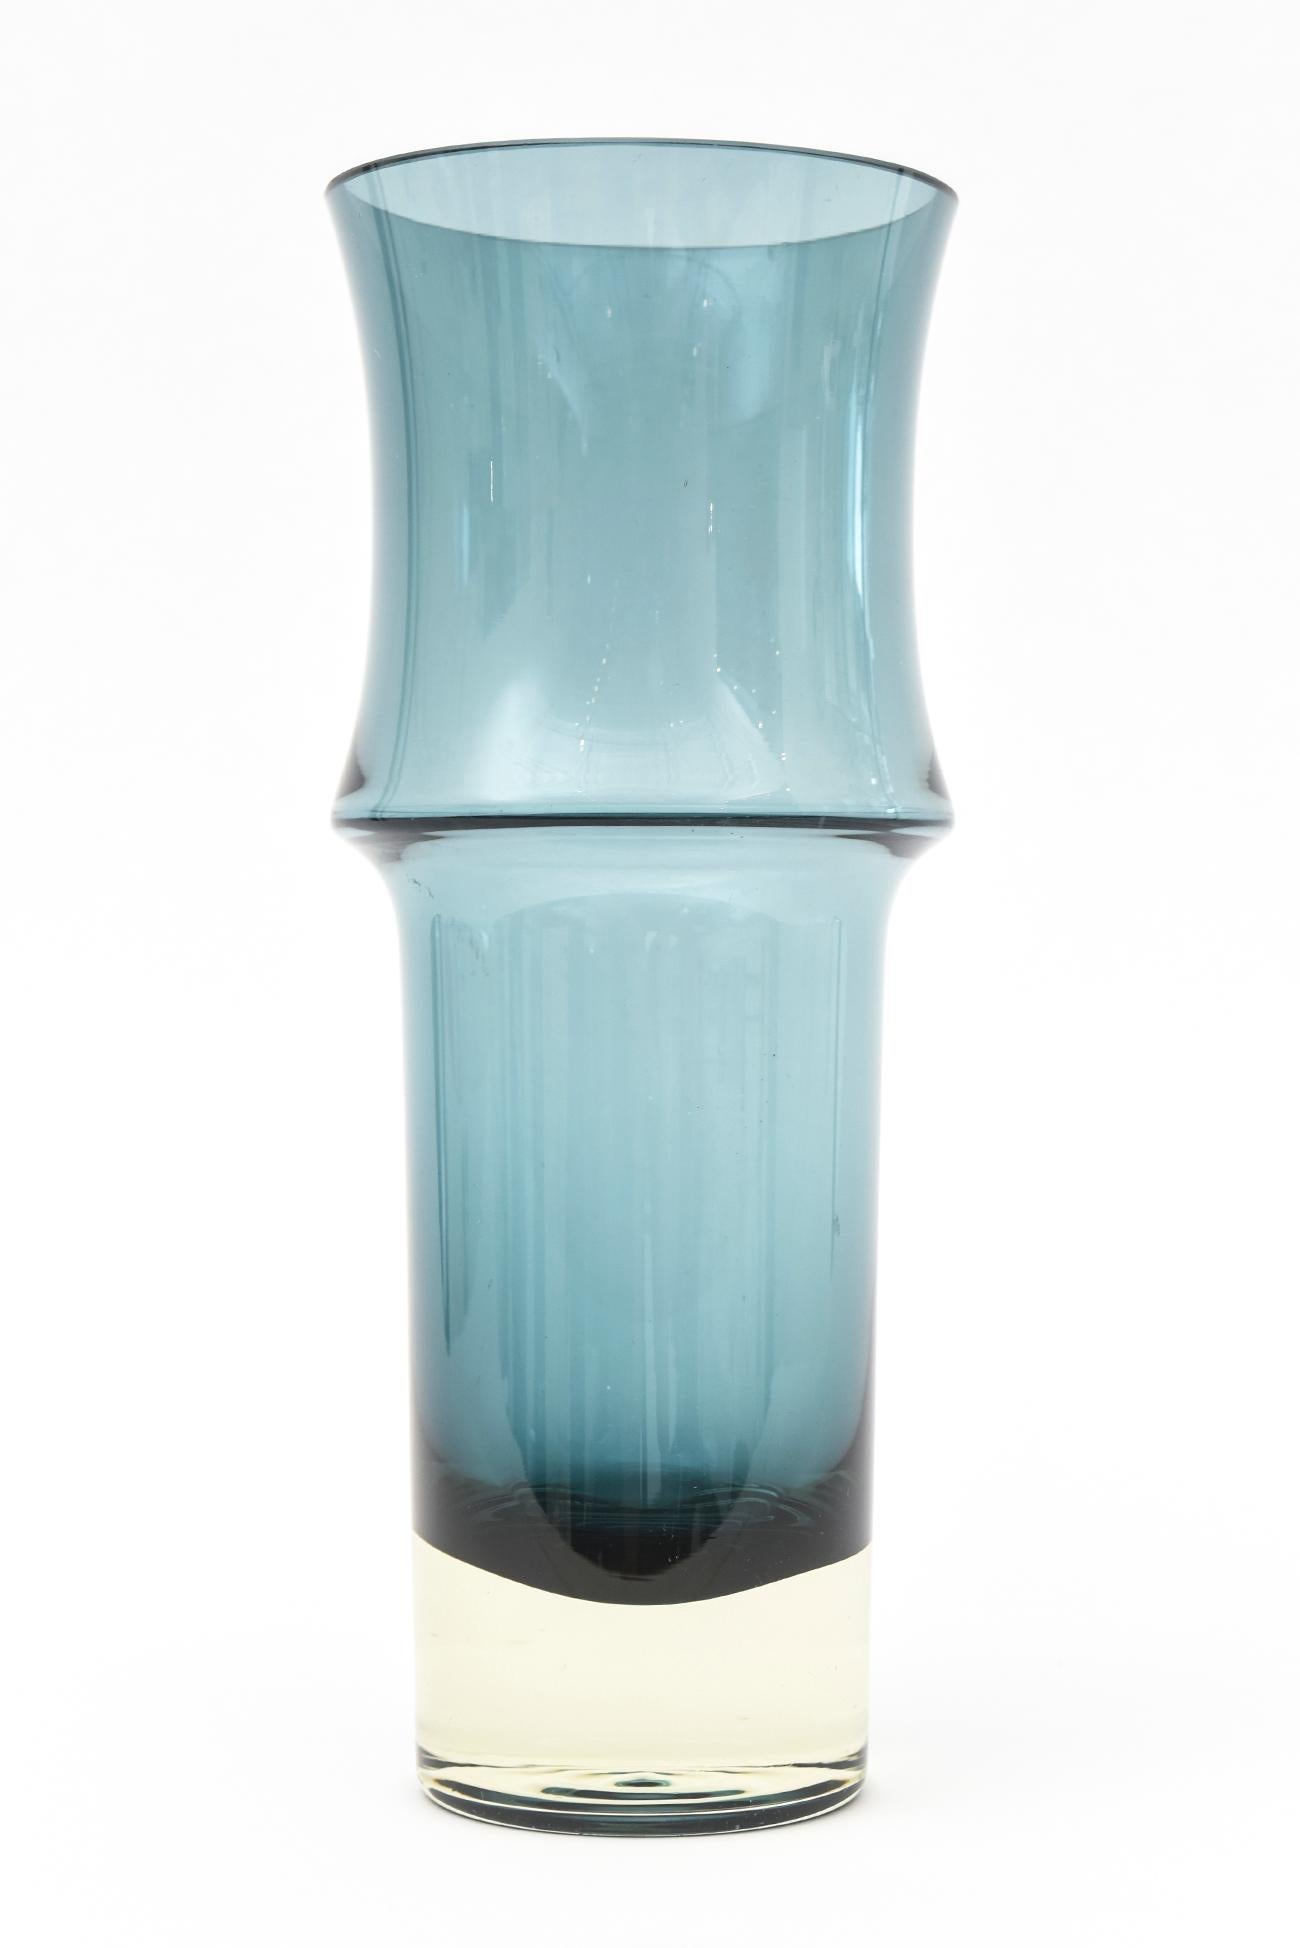 Holmegaard Teal Cornflower Blue Danish Mid Century Modern Glass Sculptural Vase In Good Condition In North Miami, FL